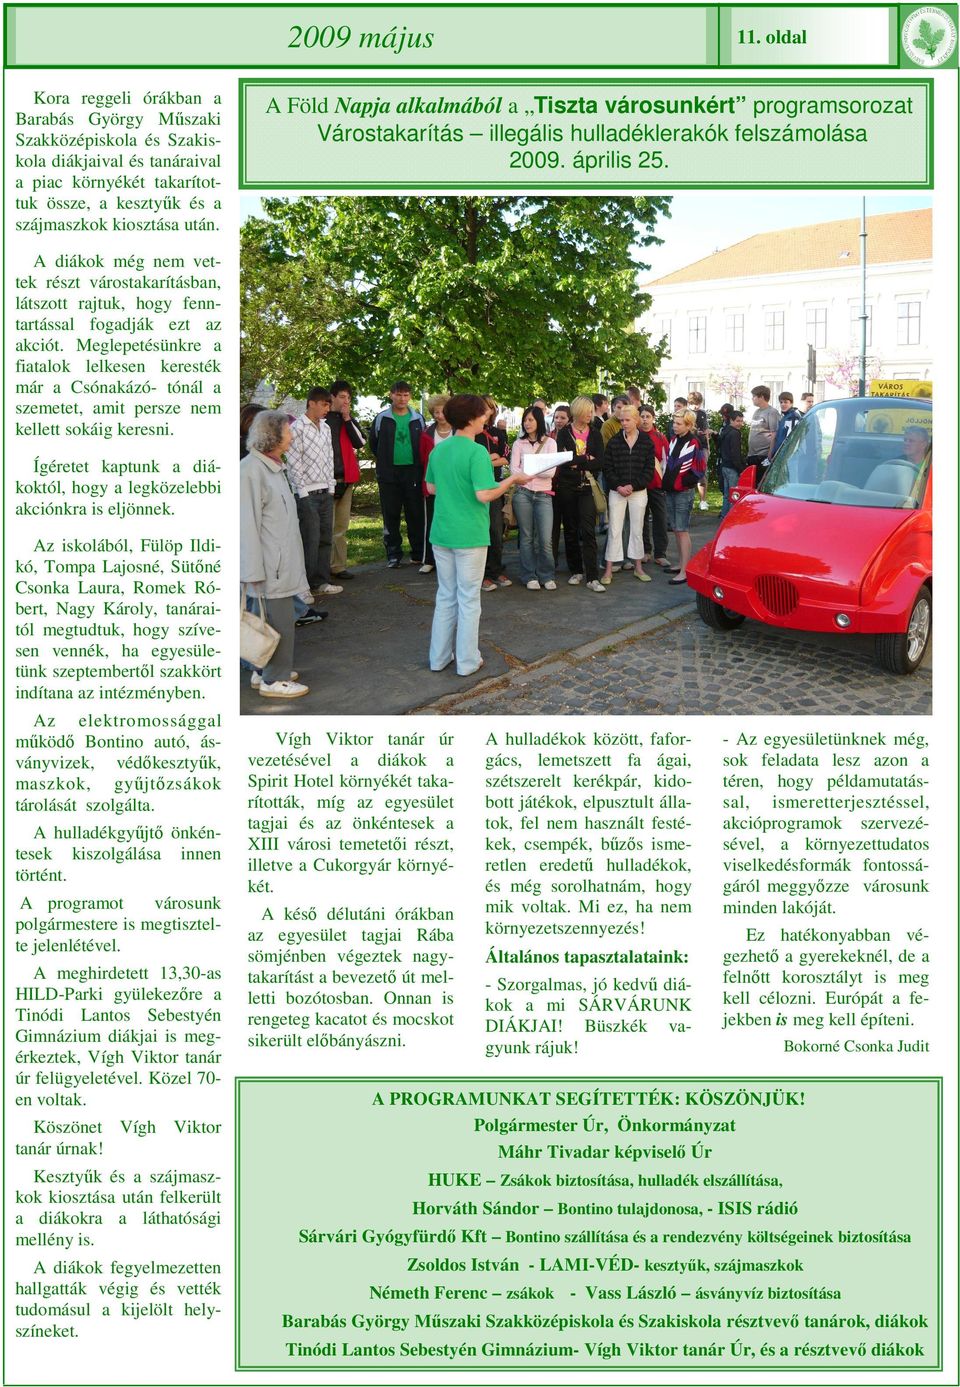 A Föld Napja alkalmából a Tiszta városunkért programsorozat Várostakarítás illegális hulladéklerakók felszámolása 2009. április 25.